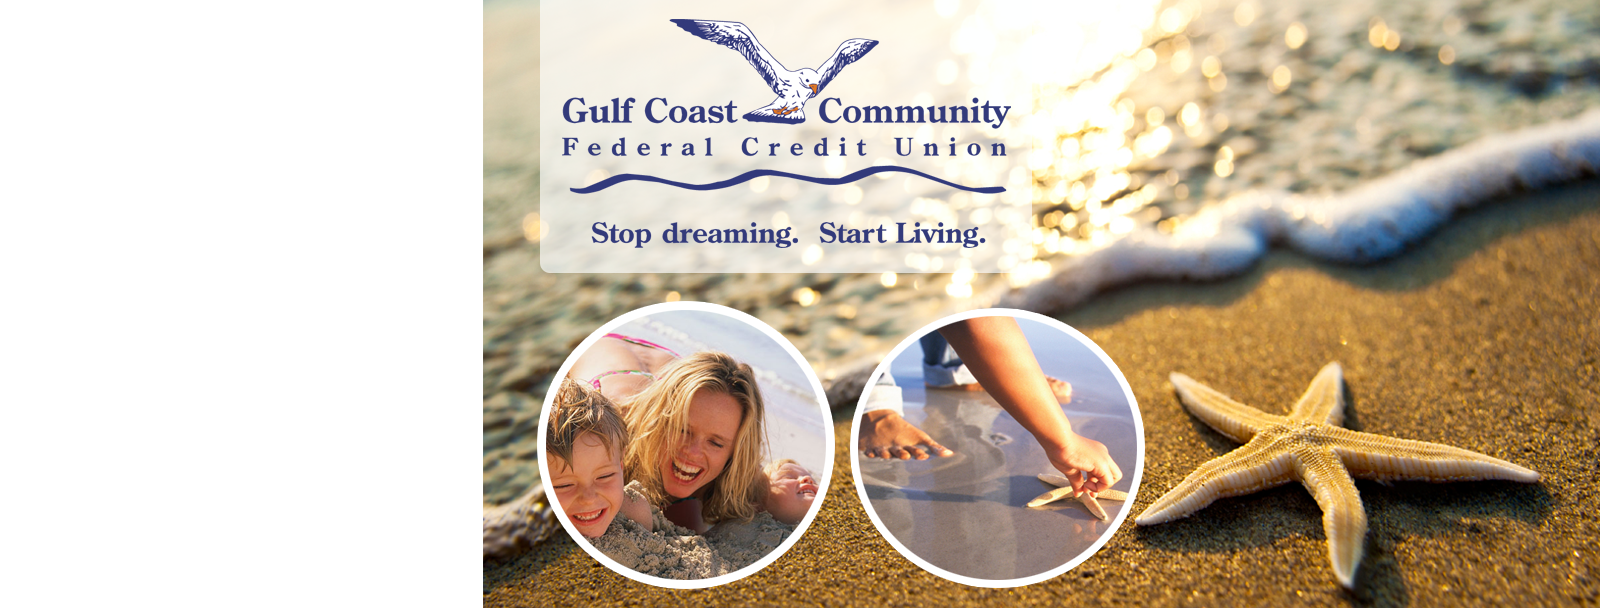 Gulf Coast Community Federal Credit Union